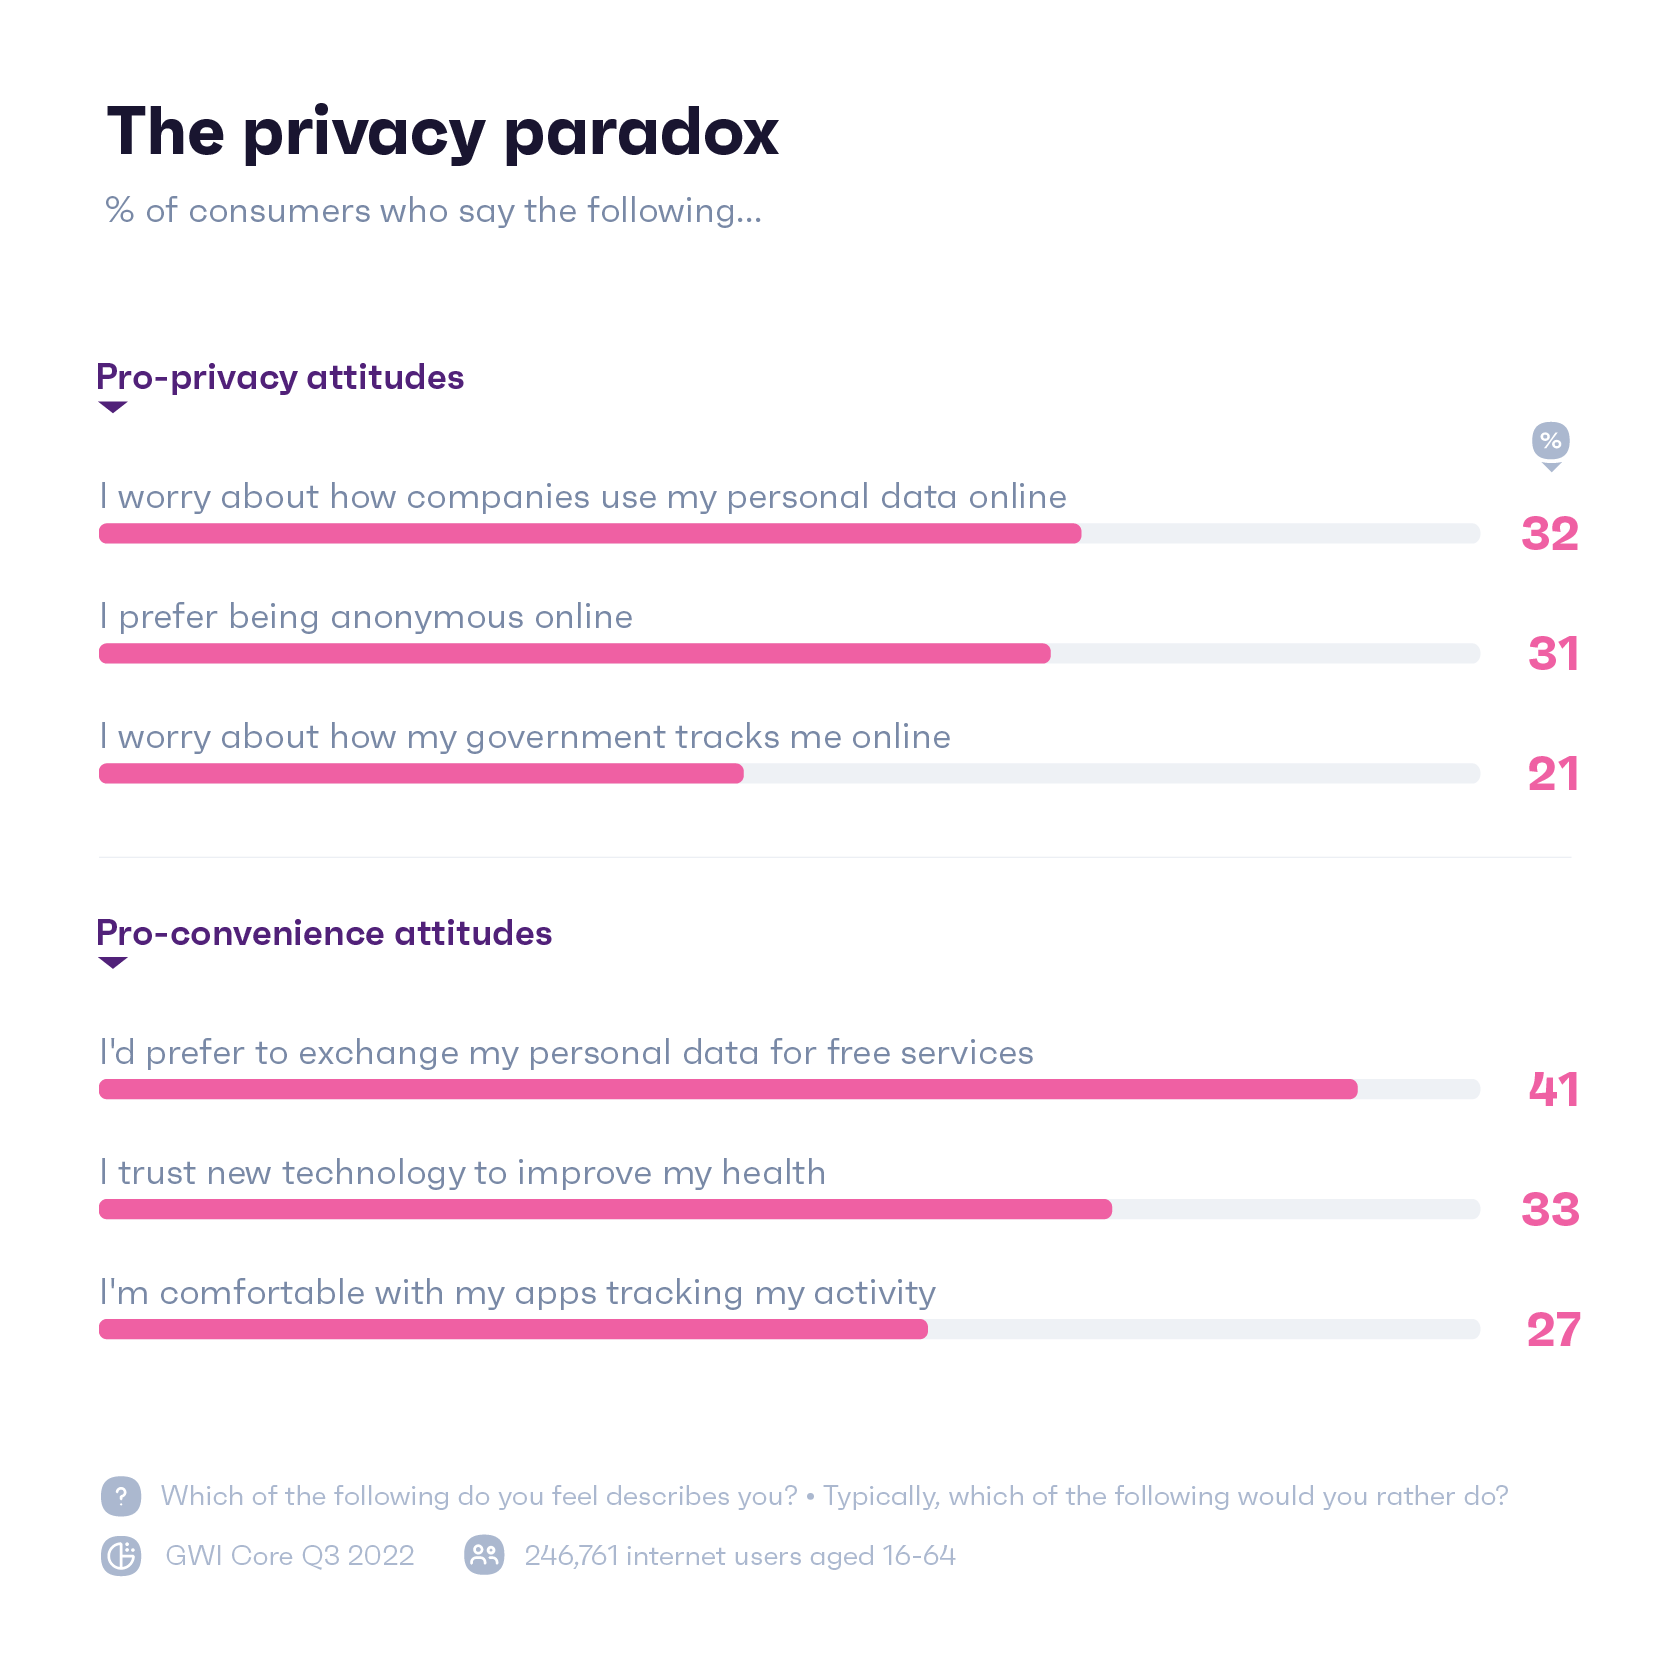 Gráfico que muestra cómo se sienten las personas acerca de las acciones de privacidad en línea